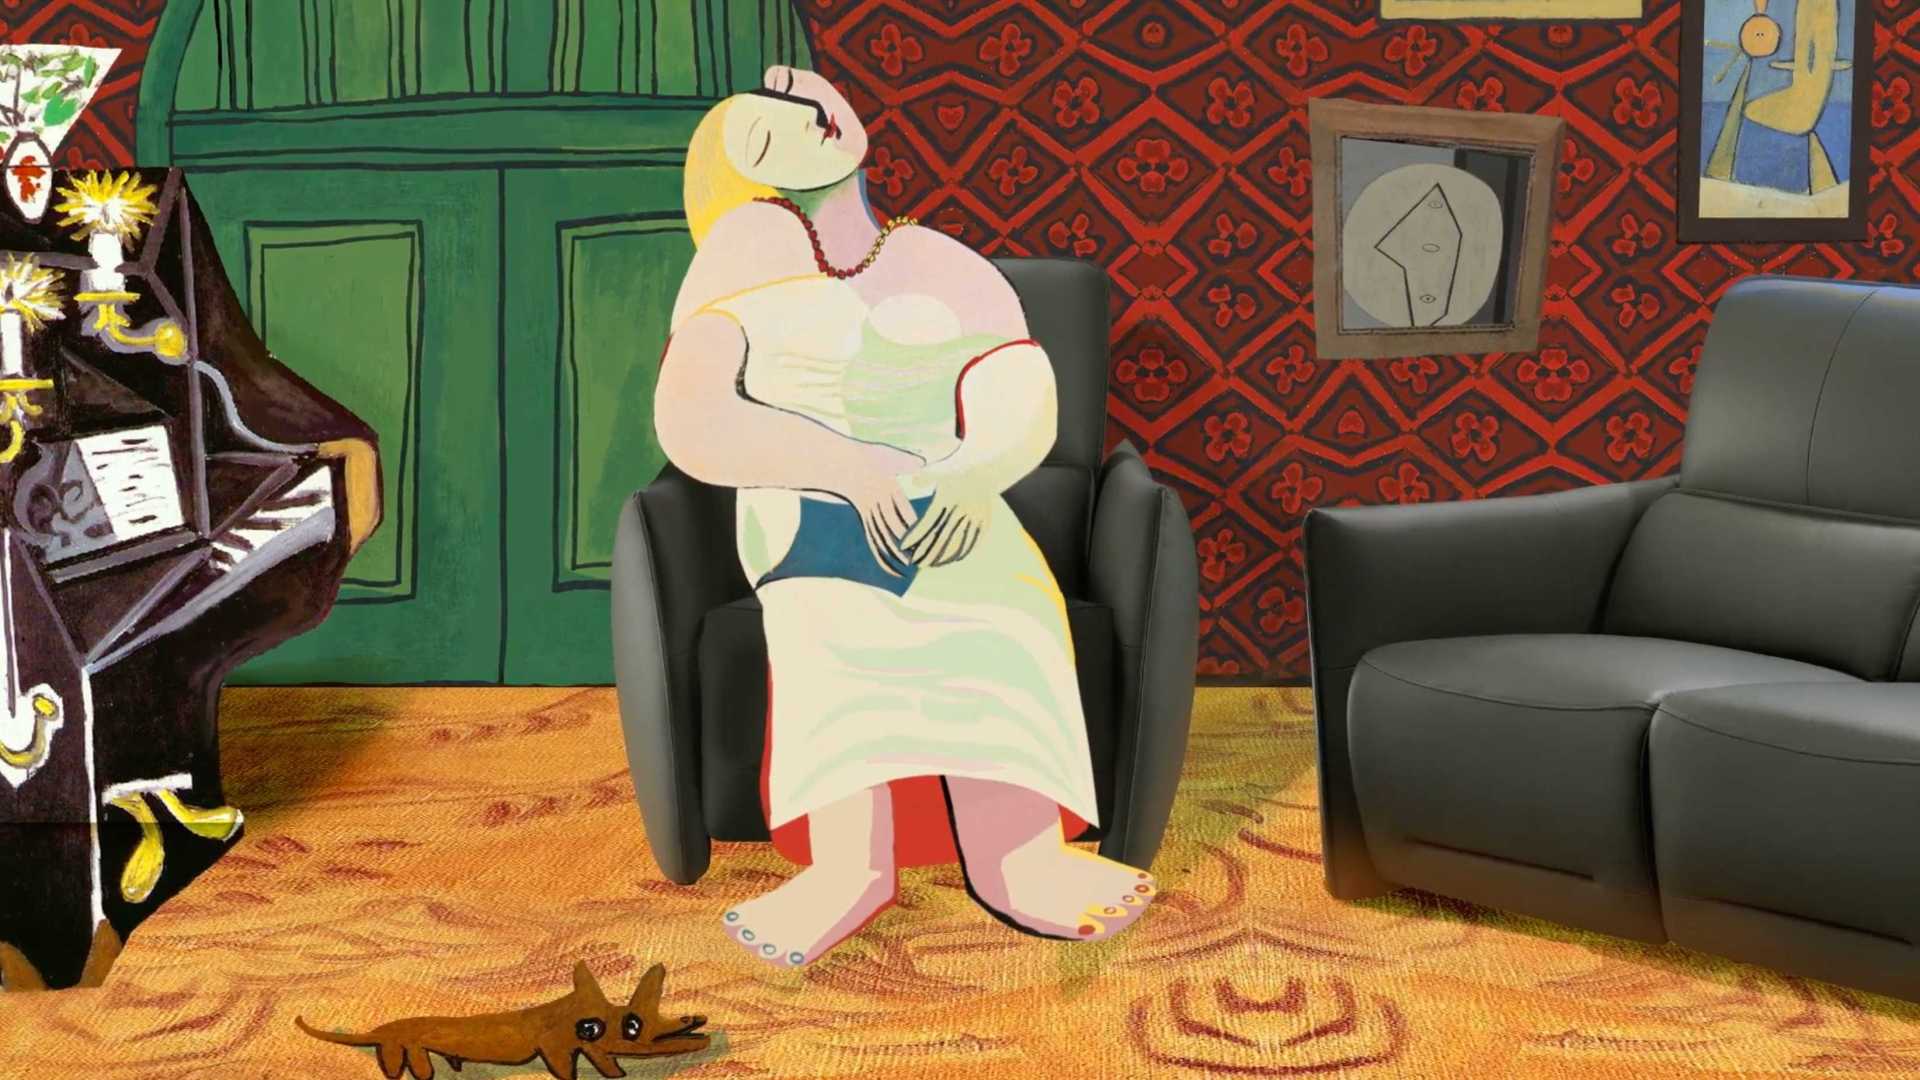 红星美凯龙·三维结合二维动画《无国界沙发篇》